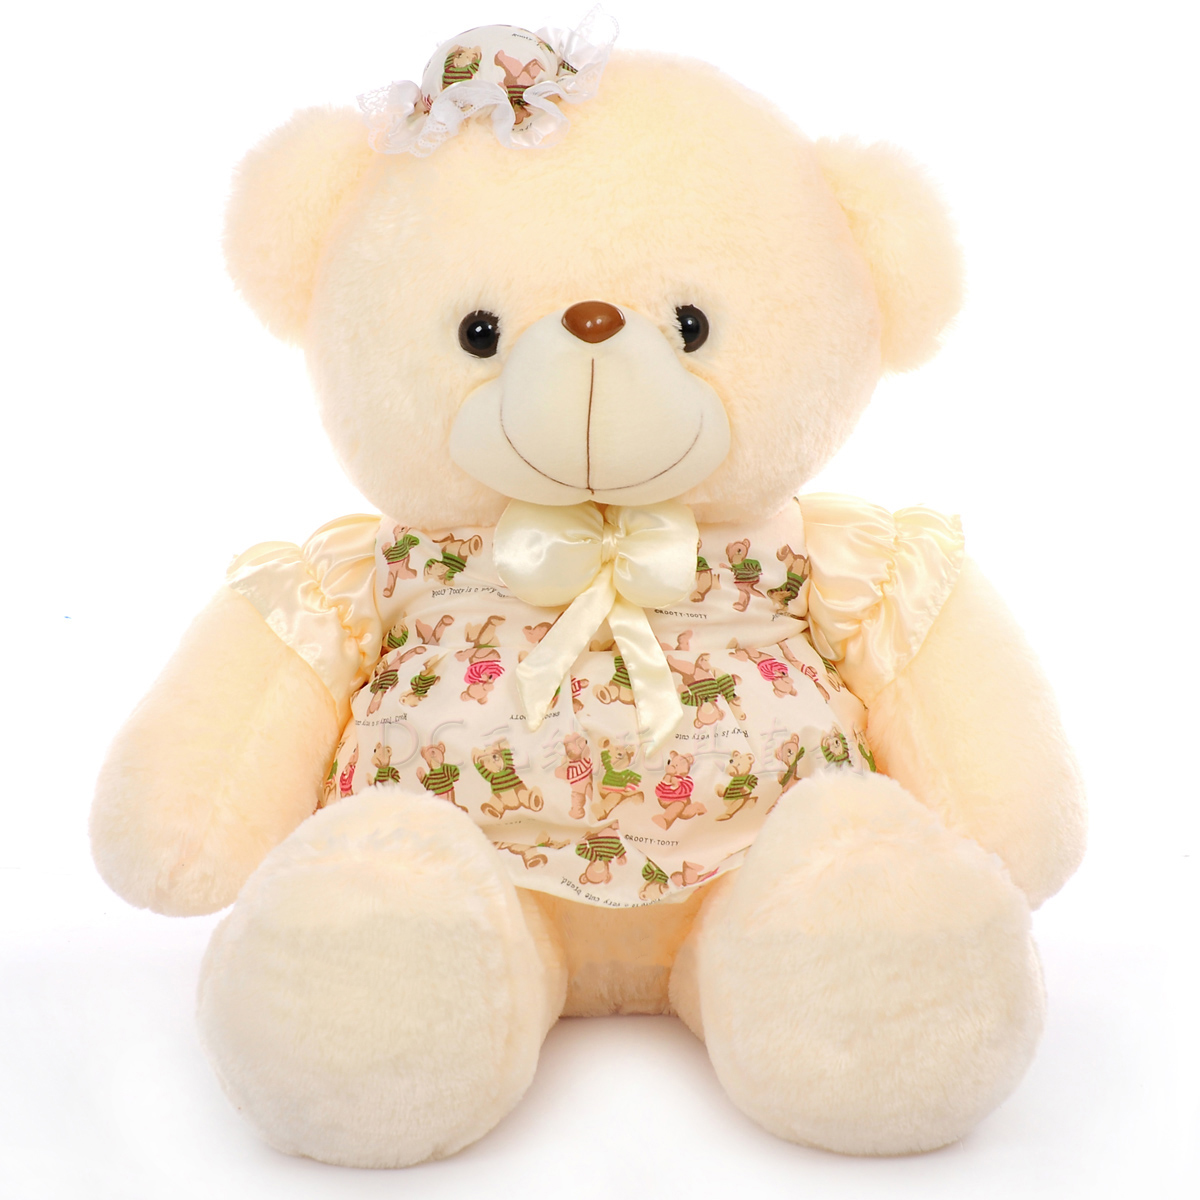 Cute teddy bear images